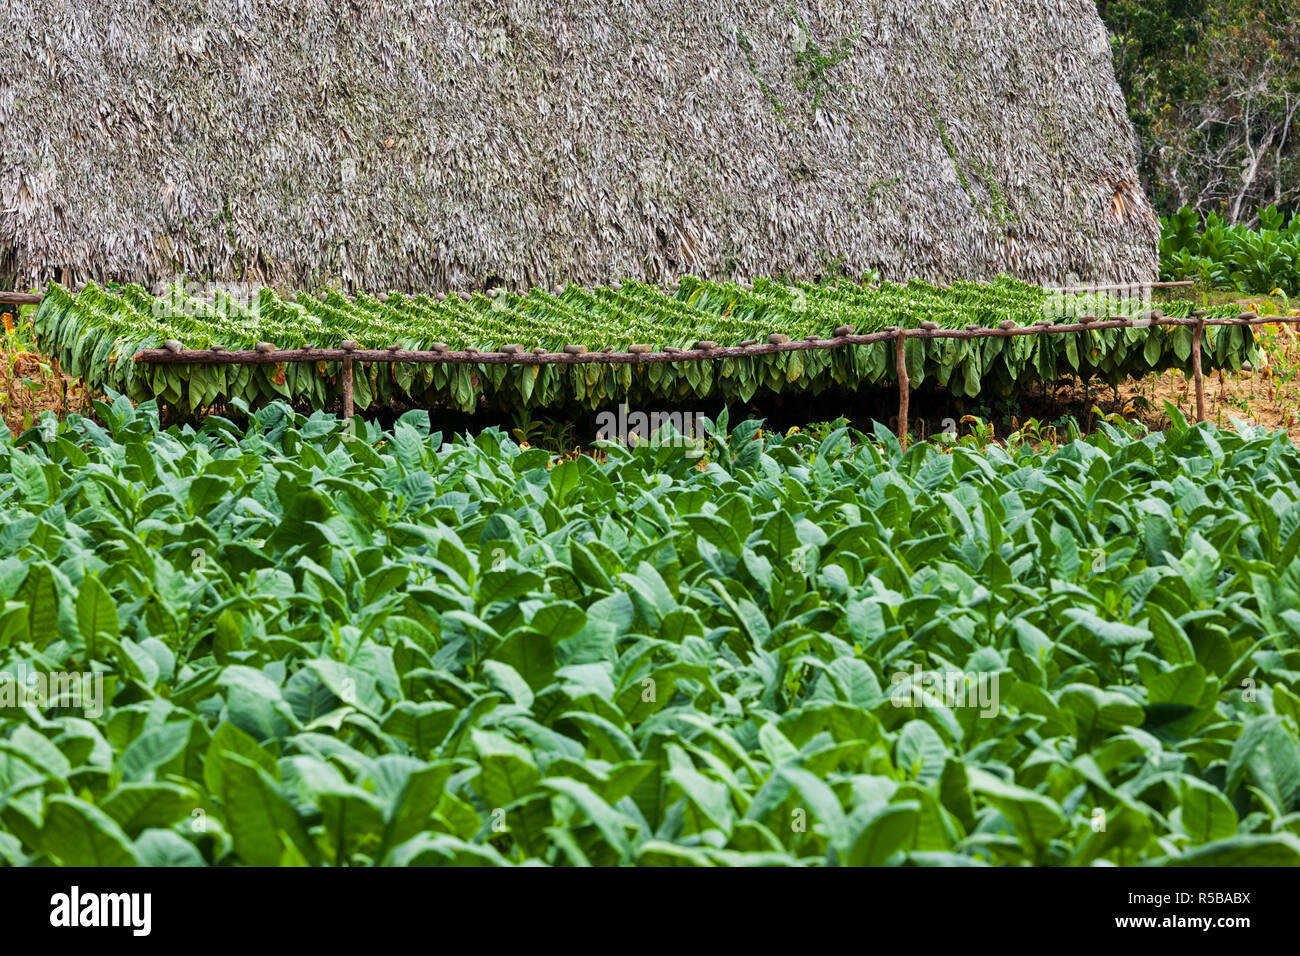 Cuba, Pinar del Rio Province, Vinales, small tobacco plantation Stock Photo